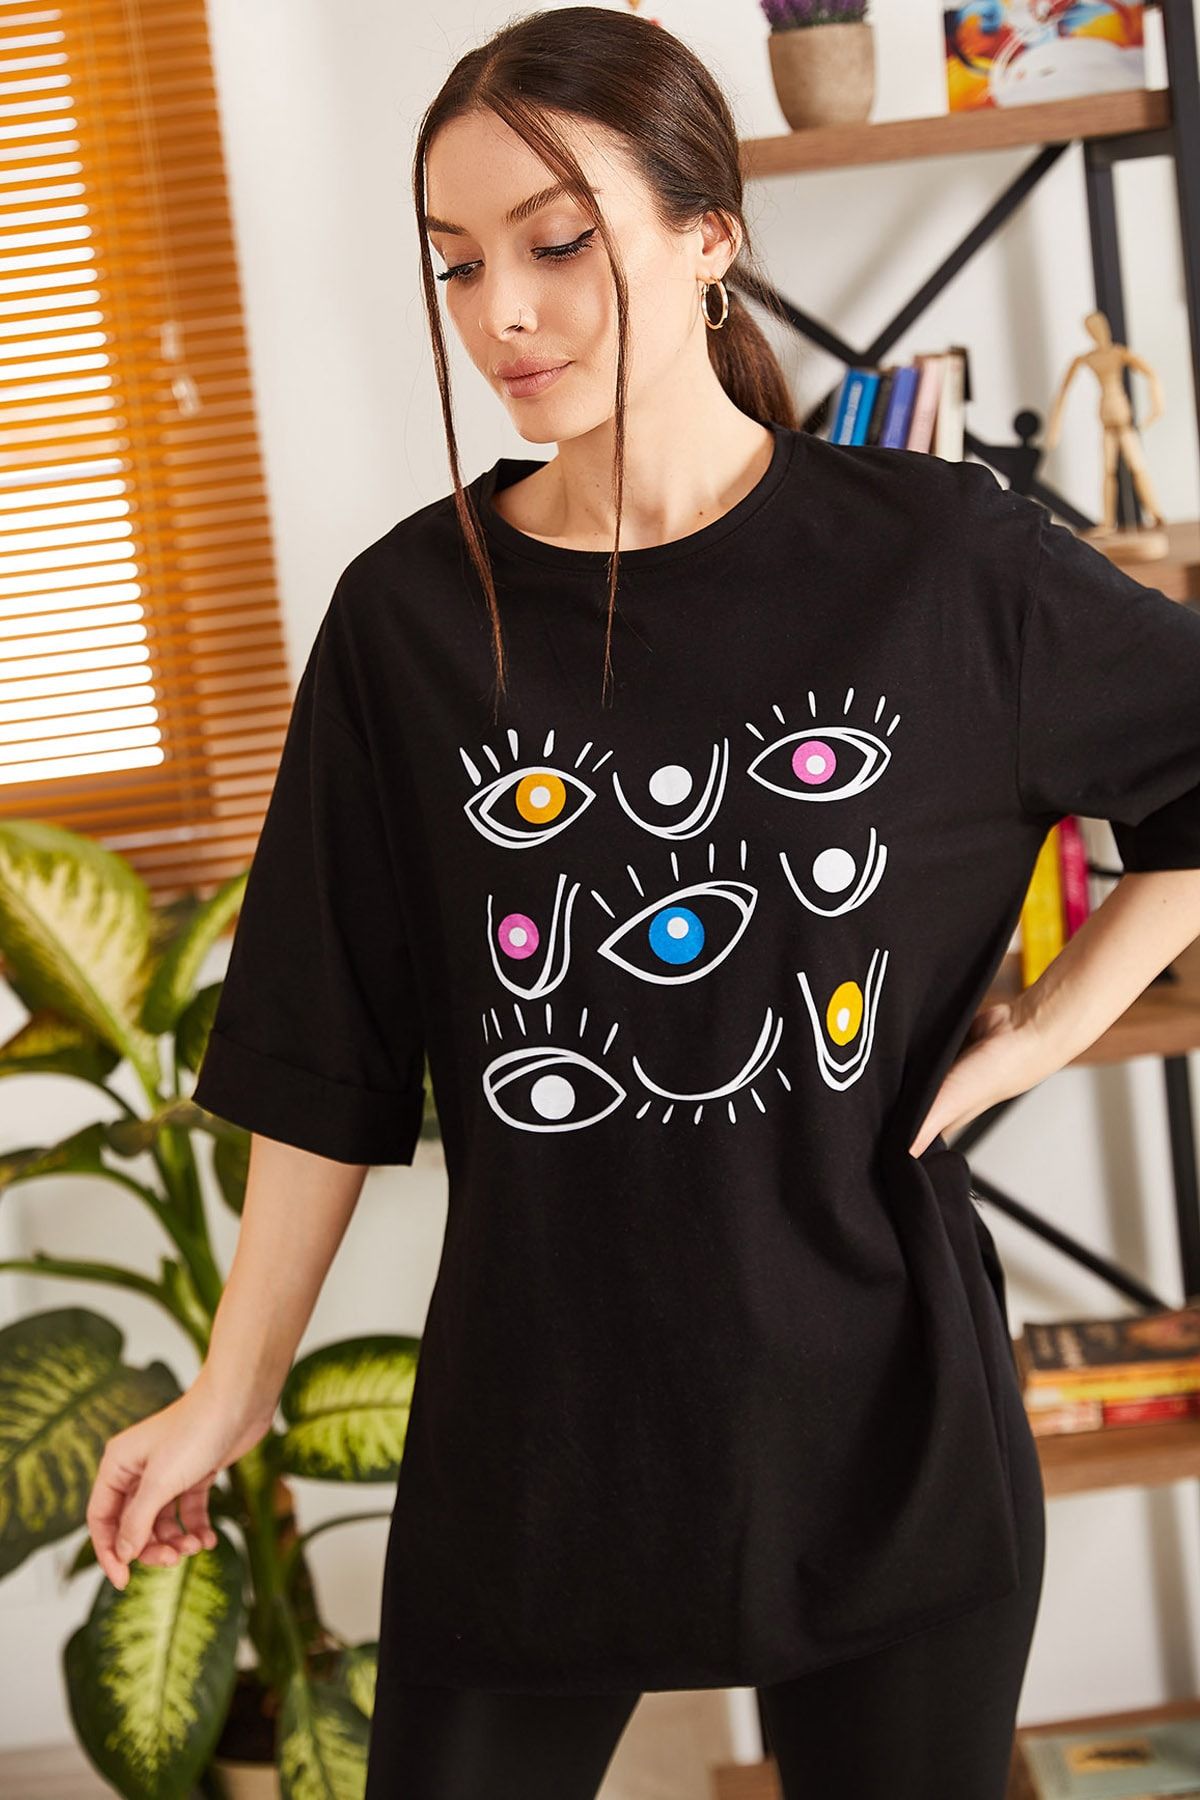 armonika Kadın Siyah Göz Baskılı Yuvarlak Yaka Yanı Yırtmaçlı T-Shirt ARM-21K012025